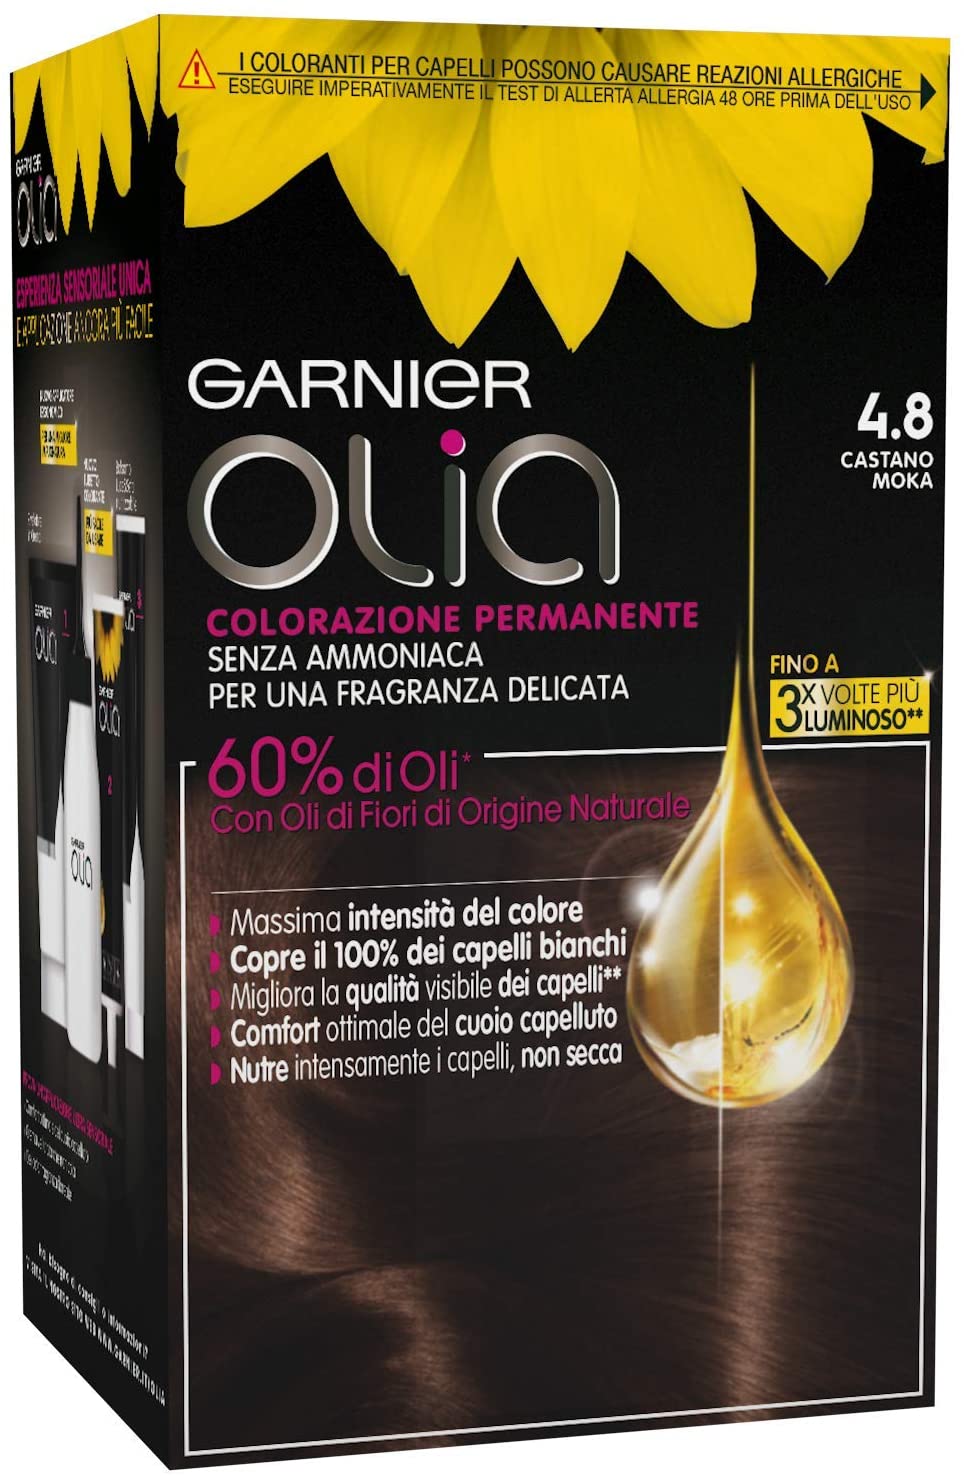 Garnier Olia Colorazione Permanente Senza Ammoniaca, Migliora la Qualità dei Capelli, Copre i Capelli Bianchi, 4.8 Castano Moka